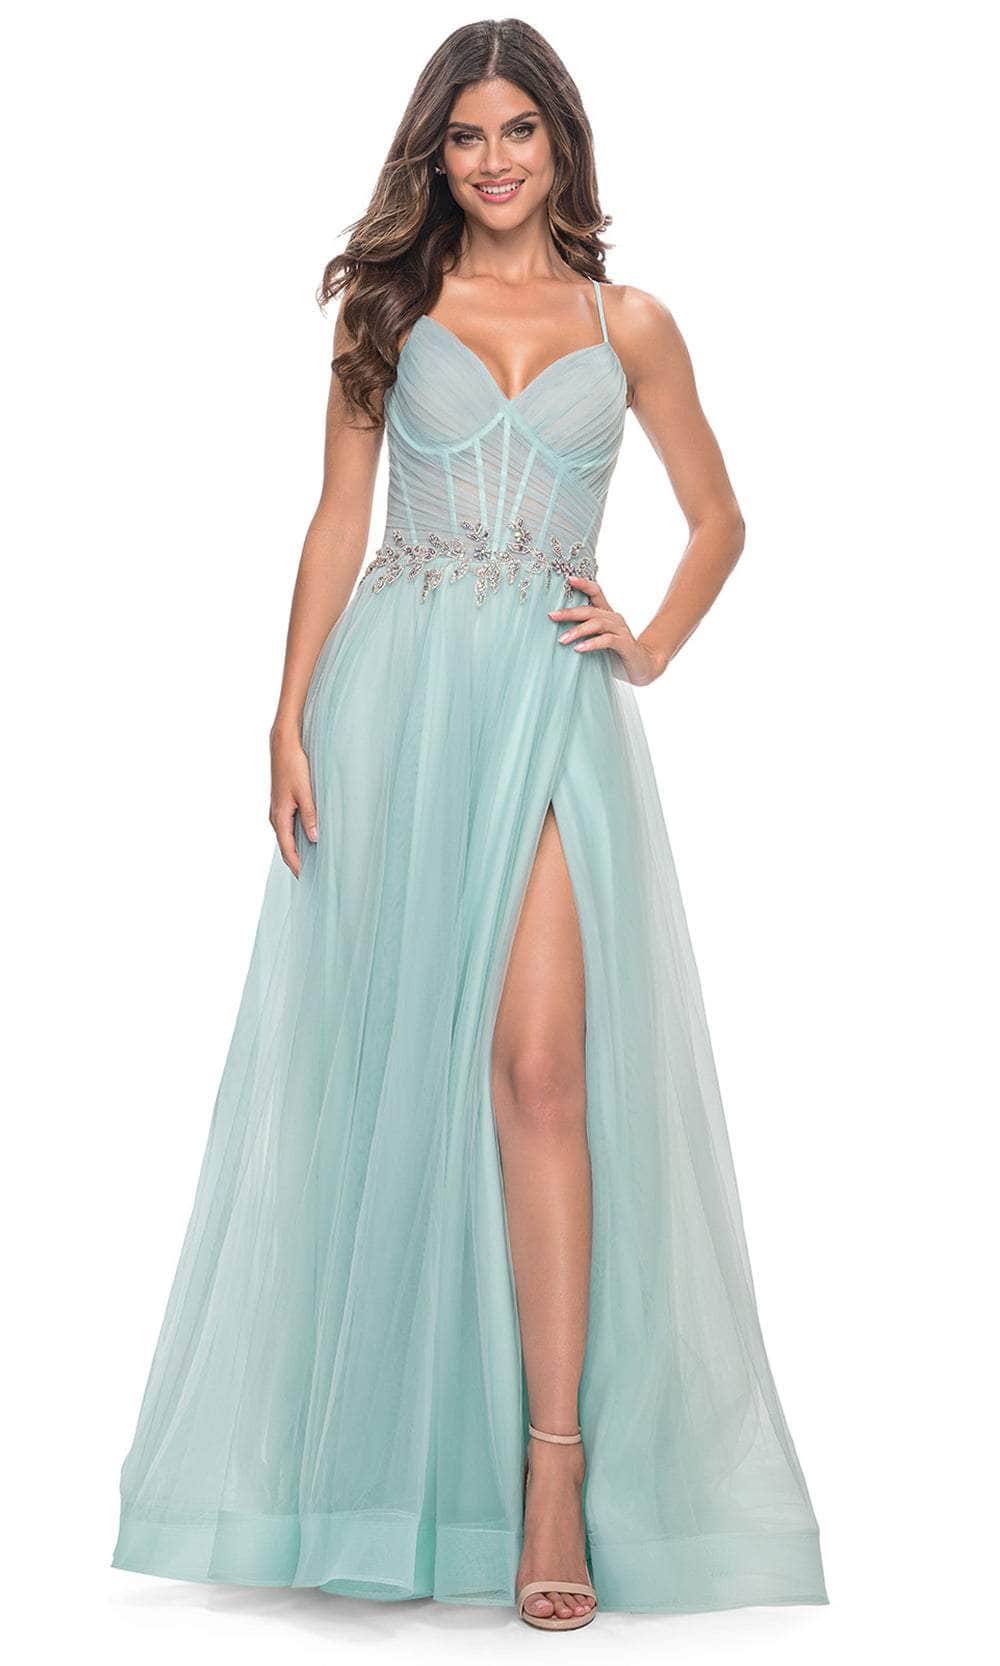 Image of La Femme 32117 - Applique Waist Prom Dress